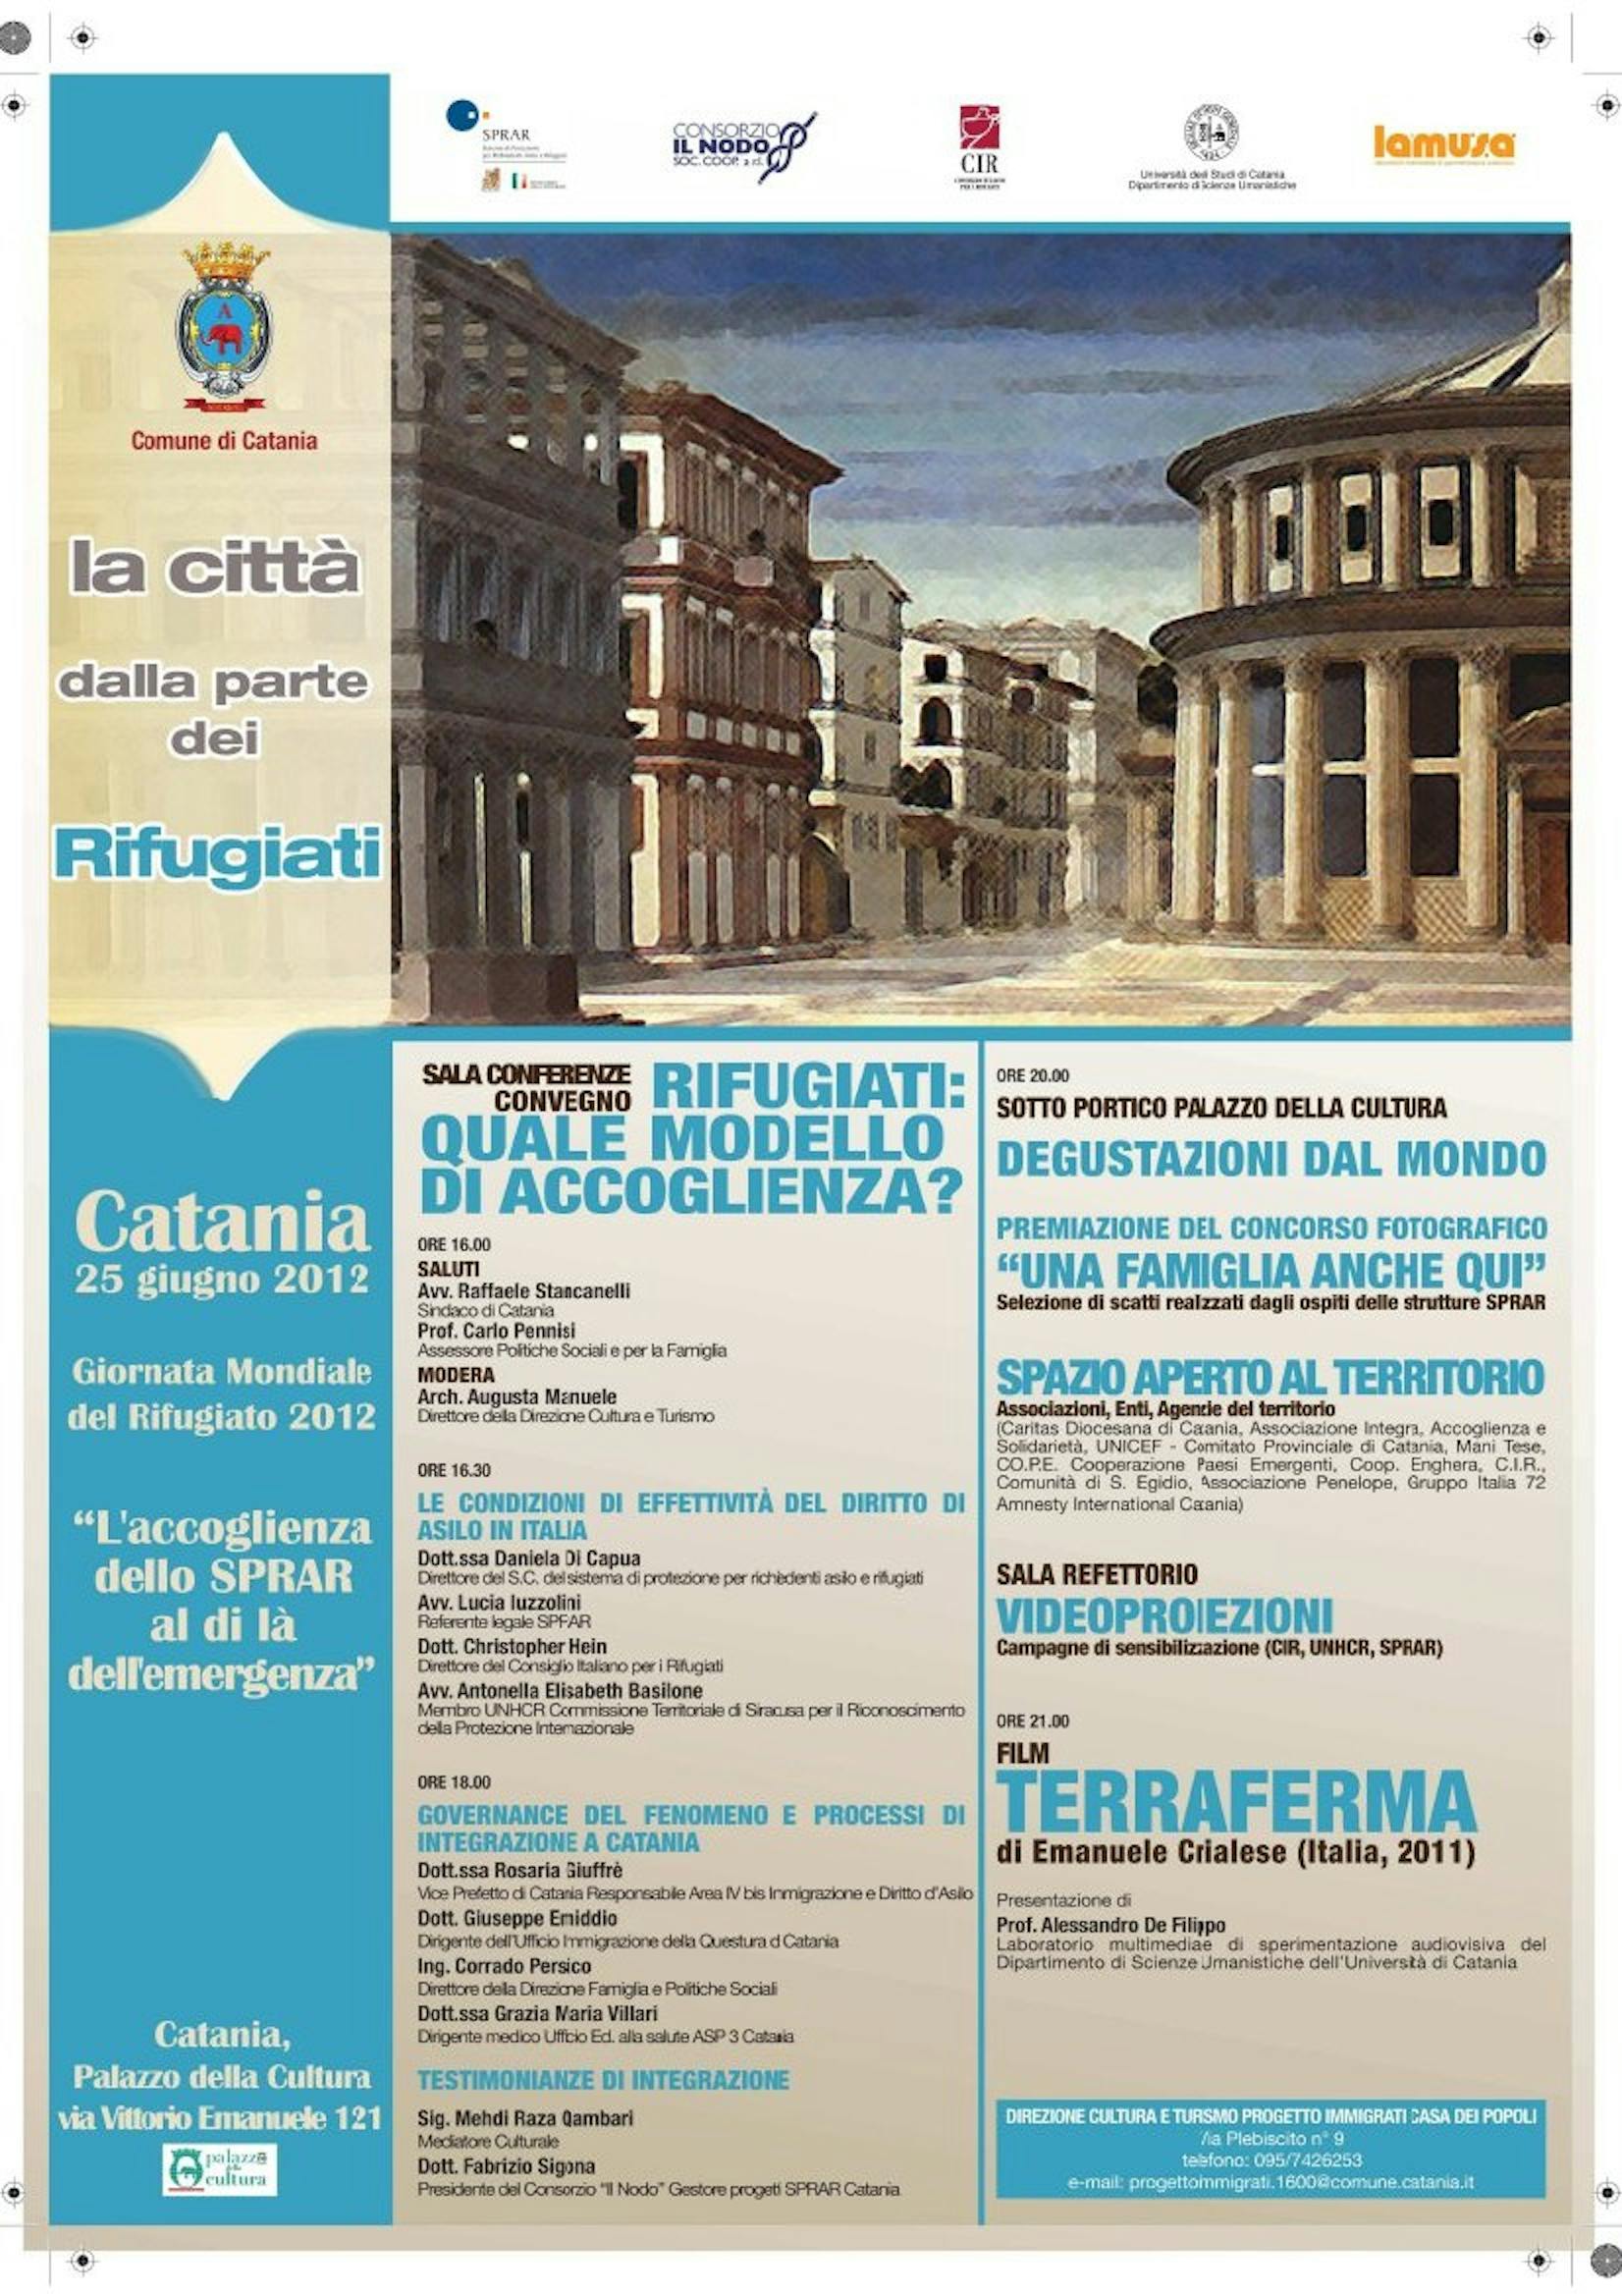 Catania celebra la Giornata Mondiale del Rifugiato